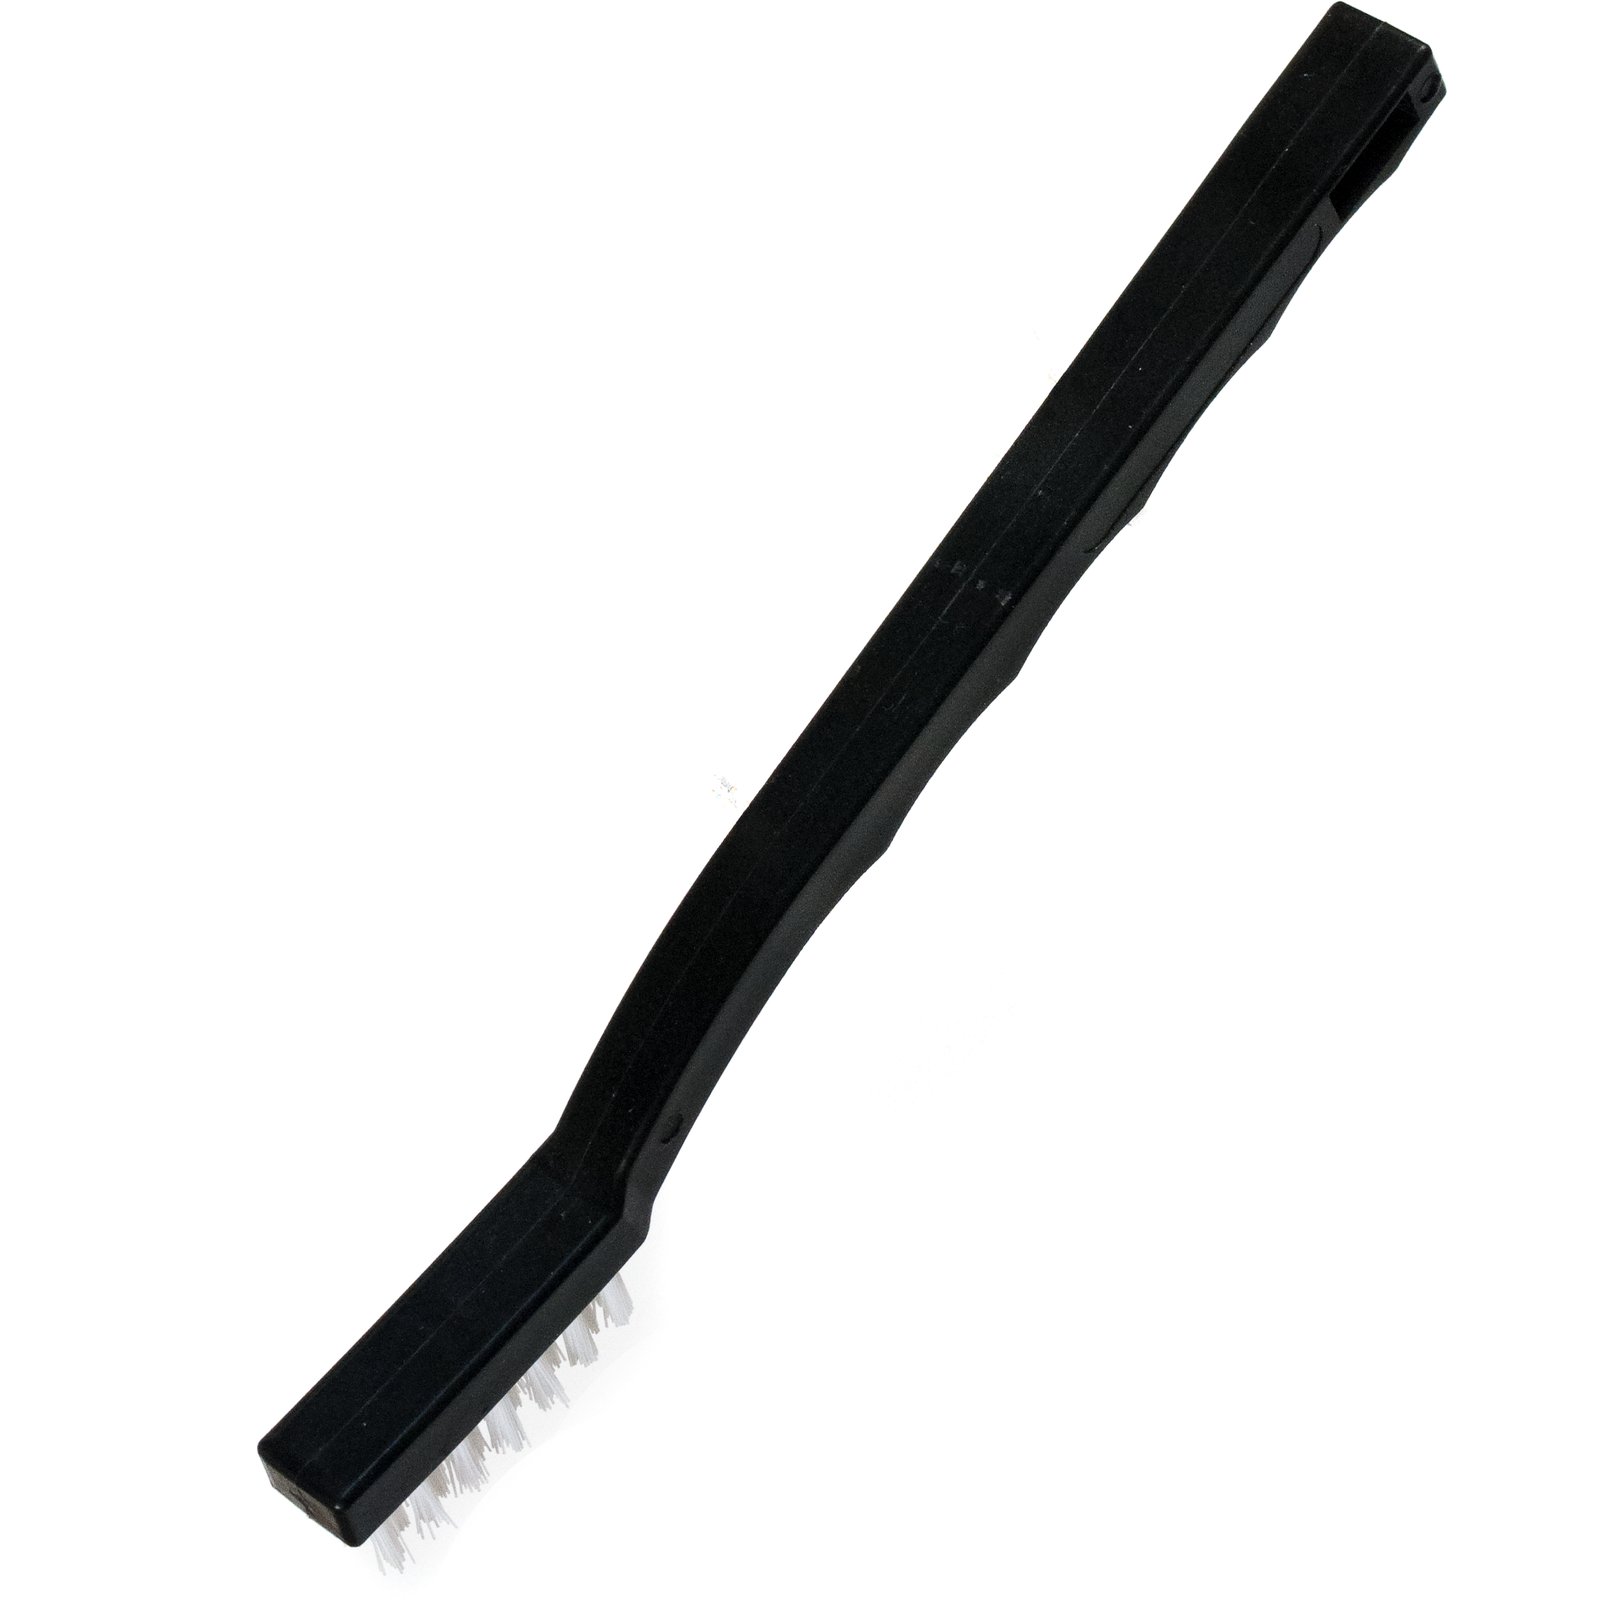 O Cedar® 9 Utility Brush w/Nylon Bristles - White